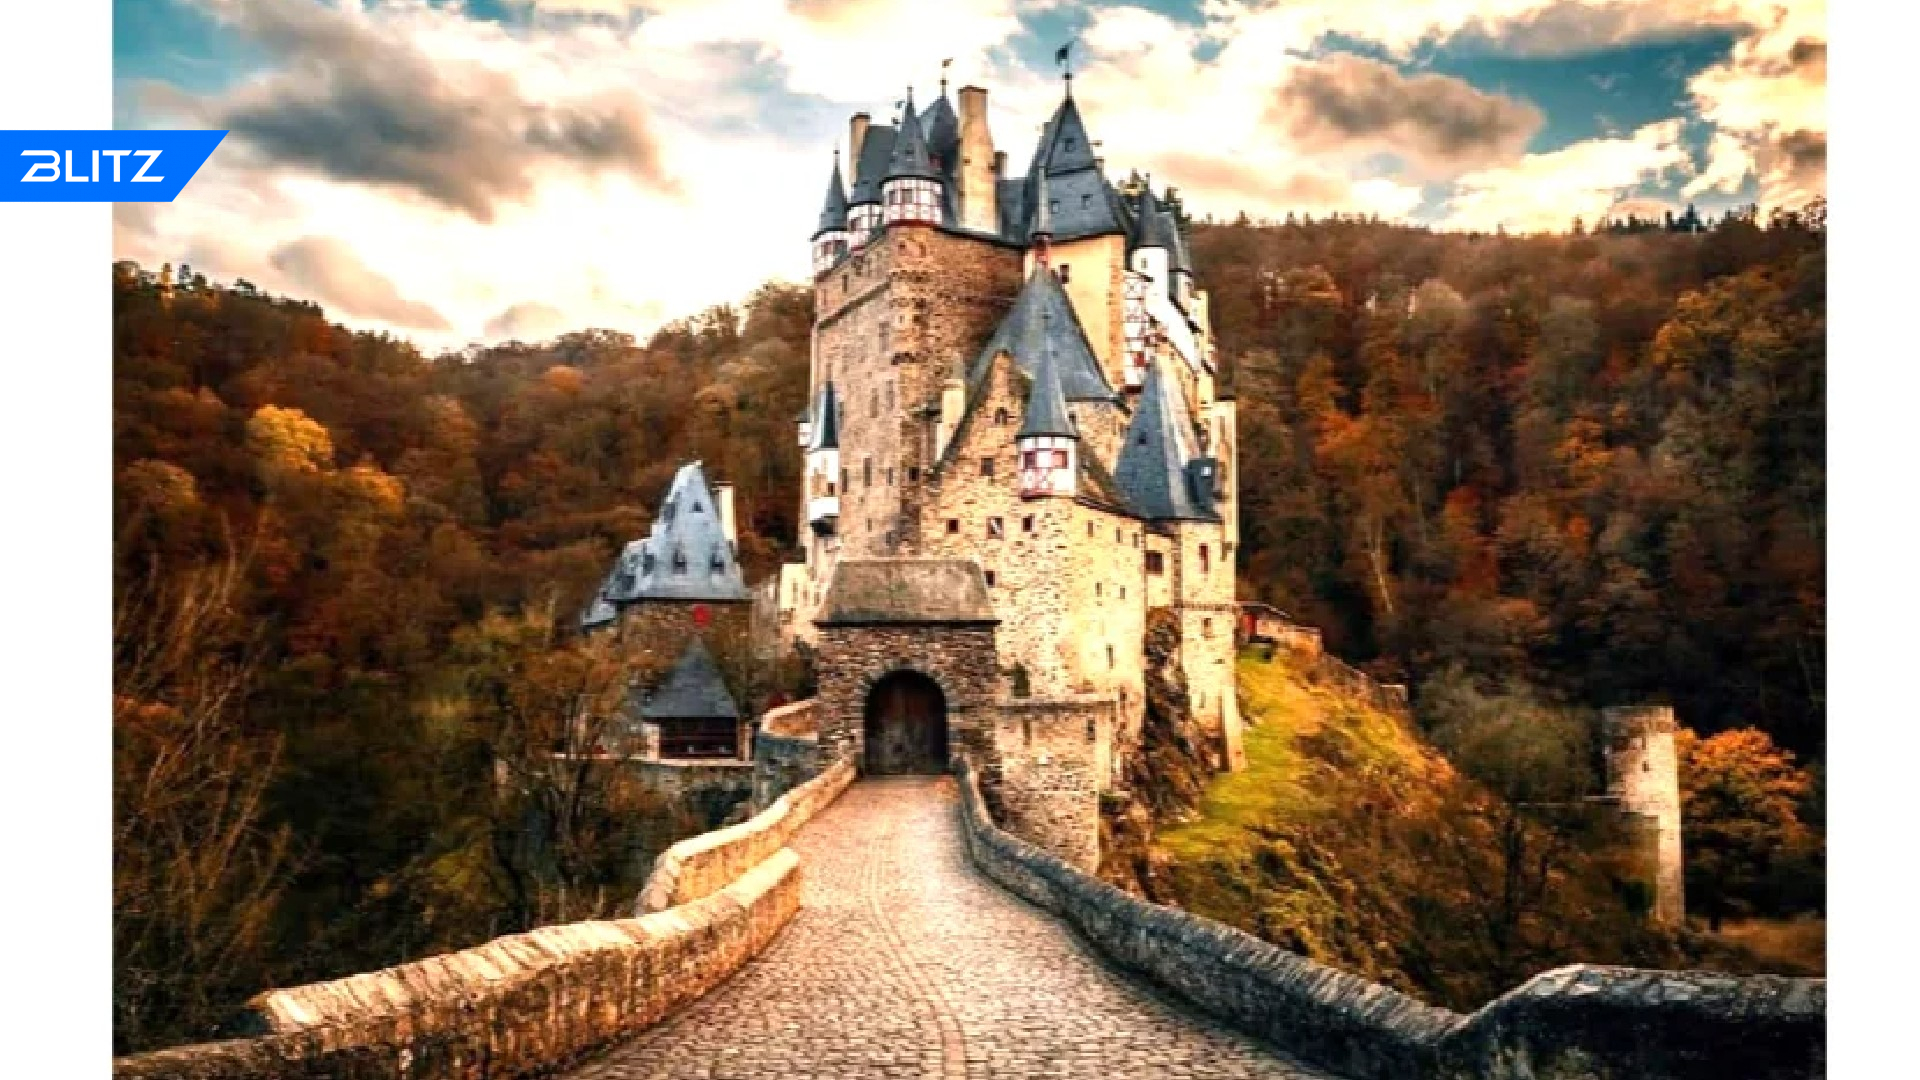 Самый хороший замок. Замок Эльц Германия. Замок Бург Эльц Германия. Замок Эльц, Виршем, Германия. Замок Eltz в Германии.